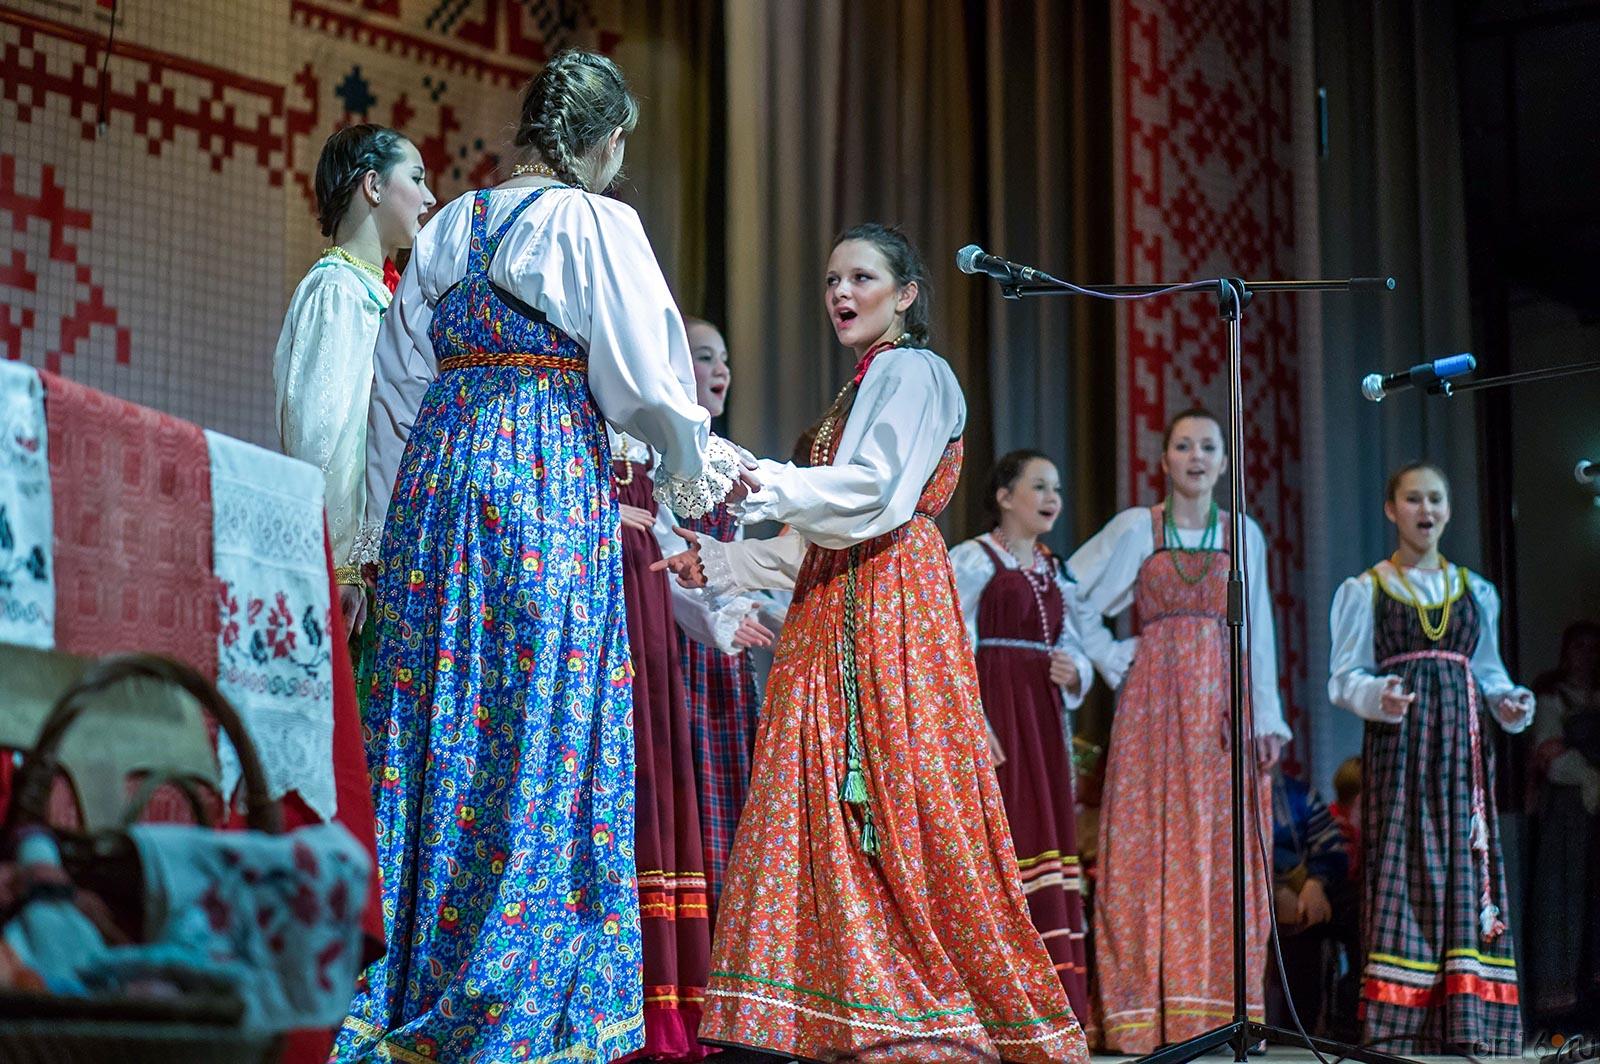  Фольклорно-этнографический фестиваль «Кузьминки»::«Кузьминки»